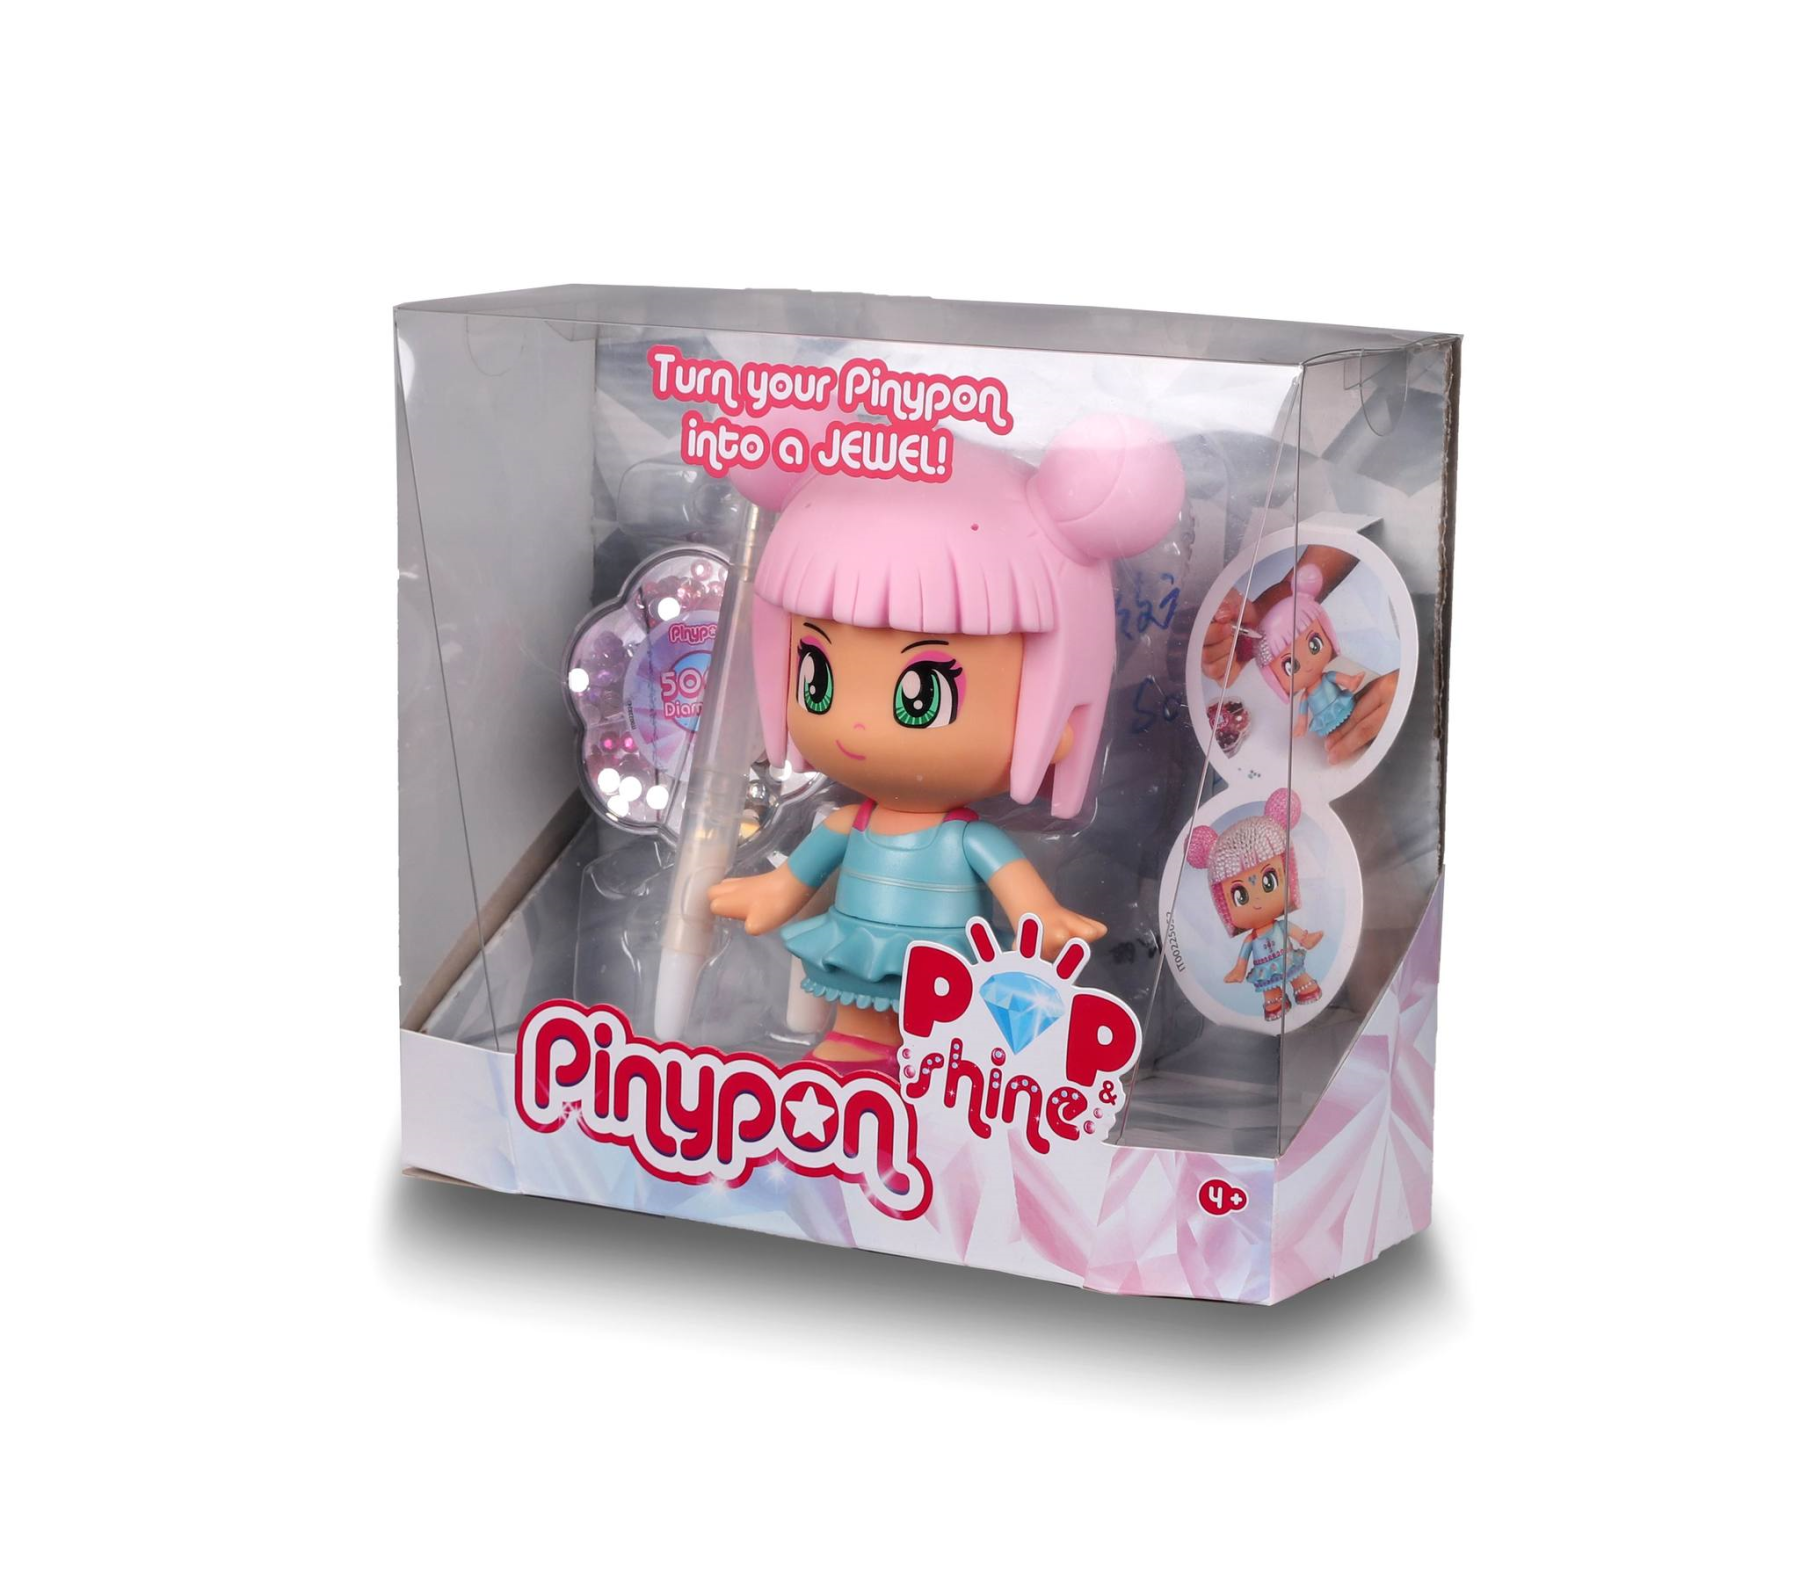 Pinypon pop & shine, personaggio pinypon da 17 cm, con oltre 500 cristalli colorati, per bambine/i da 4 anni - PINYPON